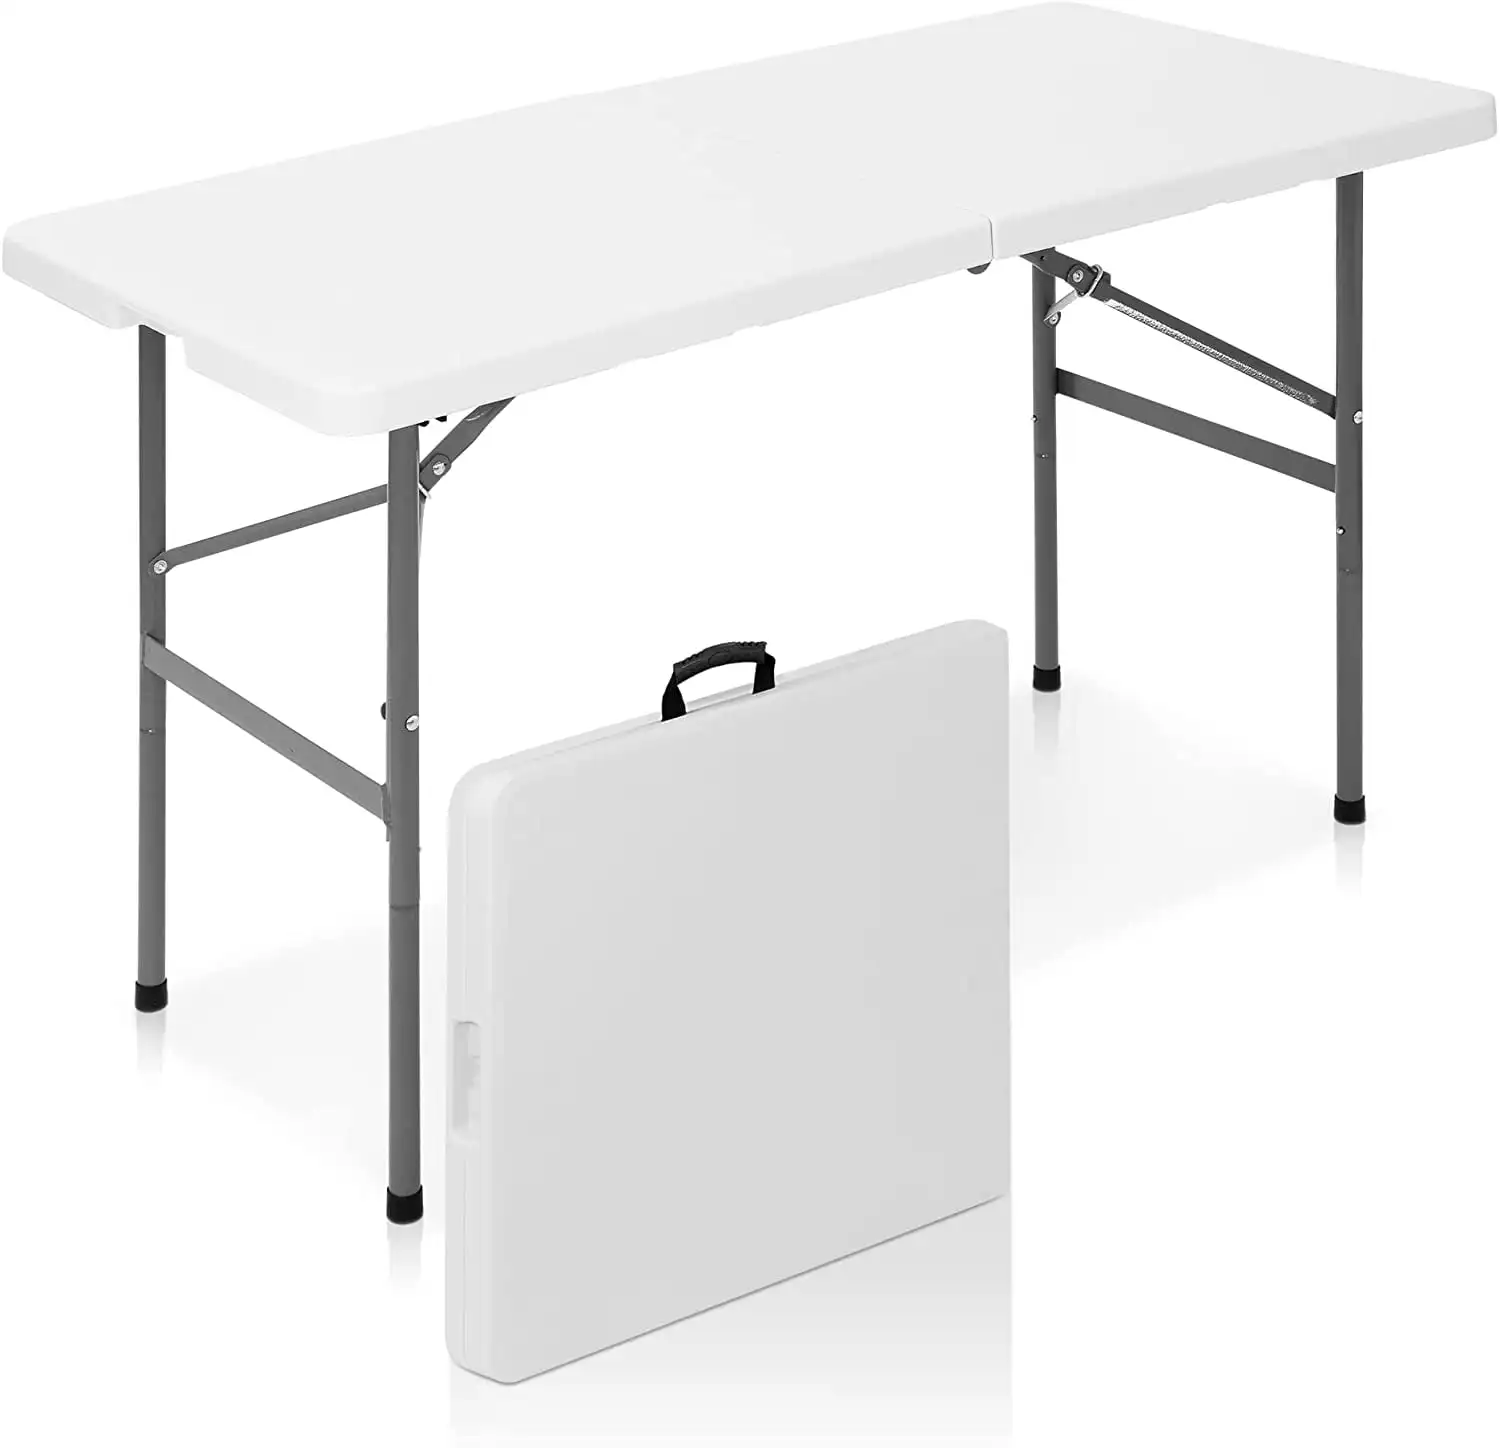 YouYeap 4-футовый складной стол белый